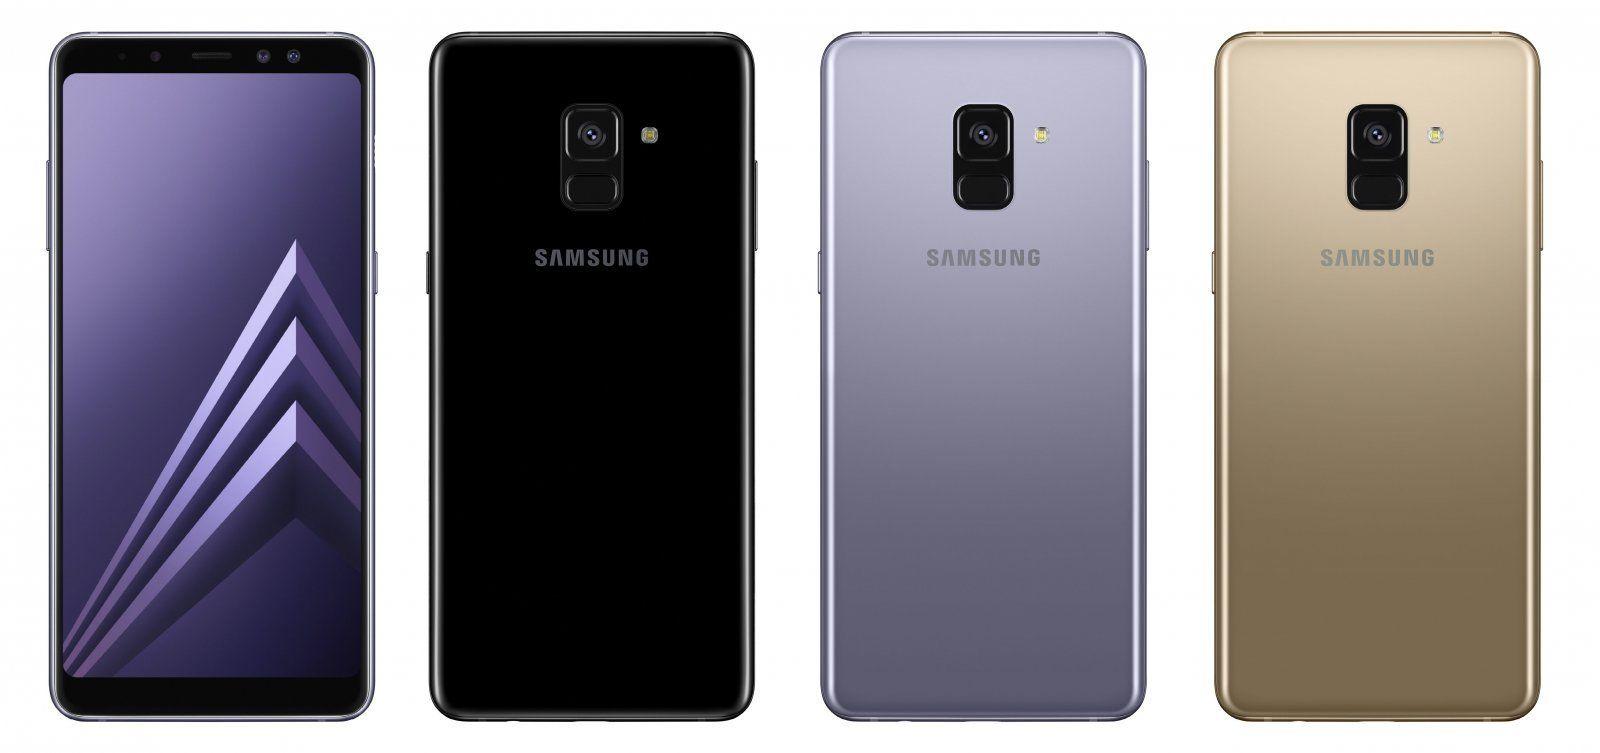 Телефоны samsung a6. Samsung Galaxy a8 a530f. Samsung Galaxy a8 a8+. Samsung Galaxy a8 2018. Galaxy a8 2018 (SM-a530f).